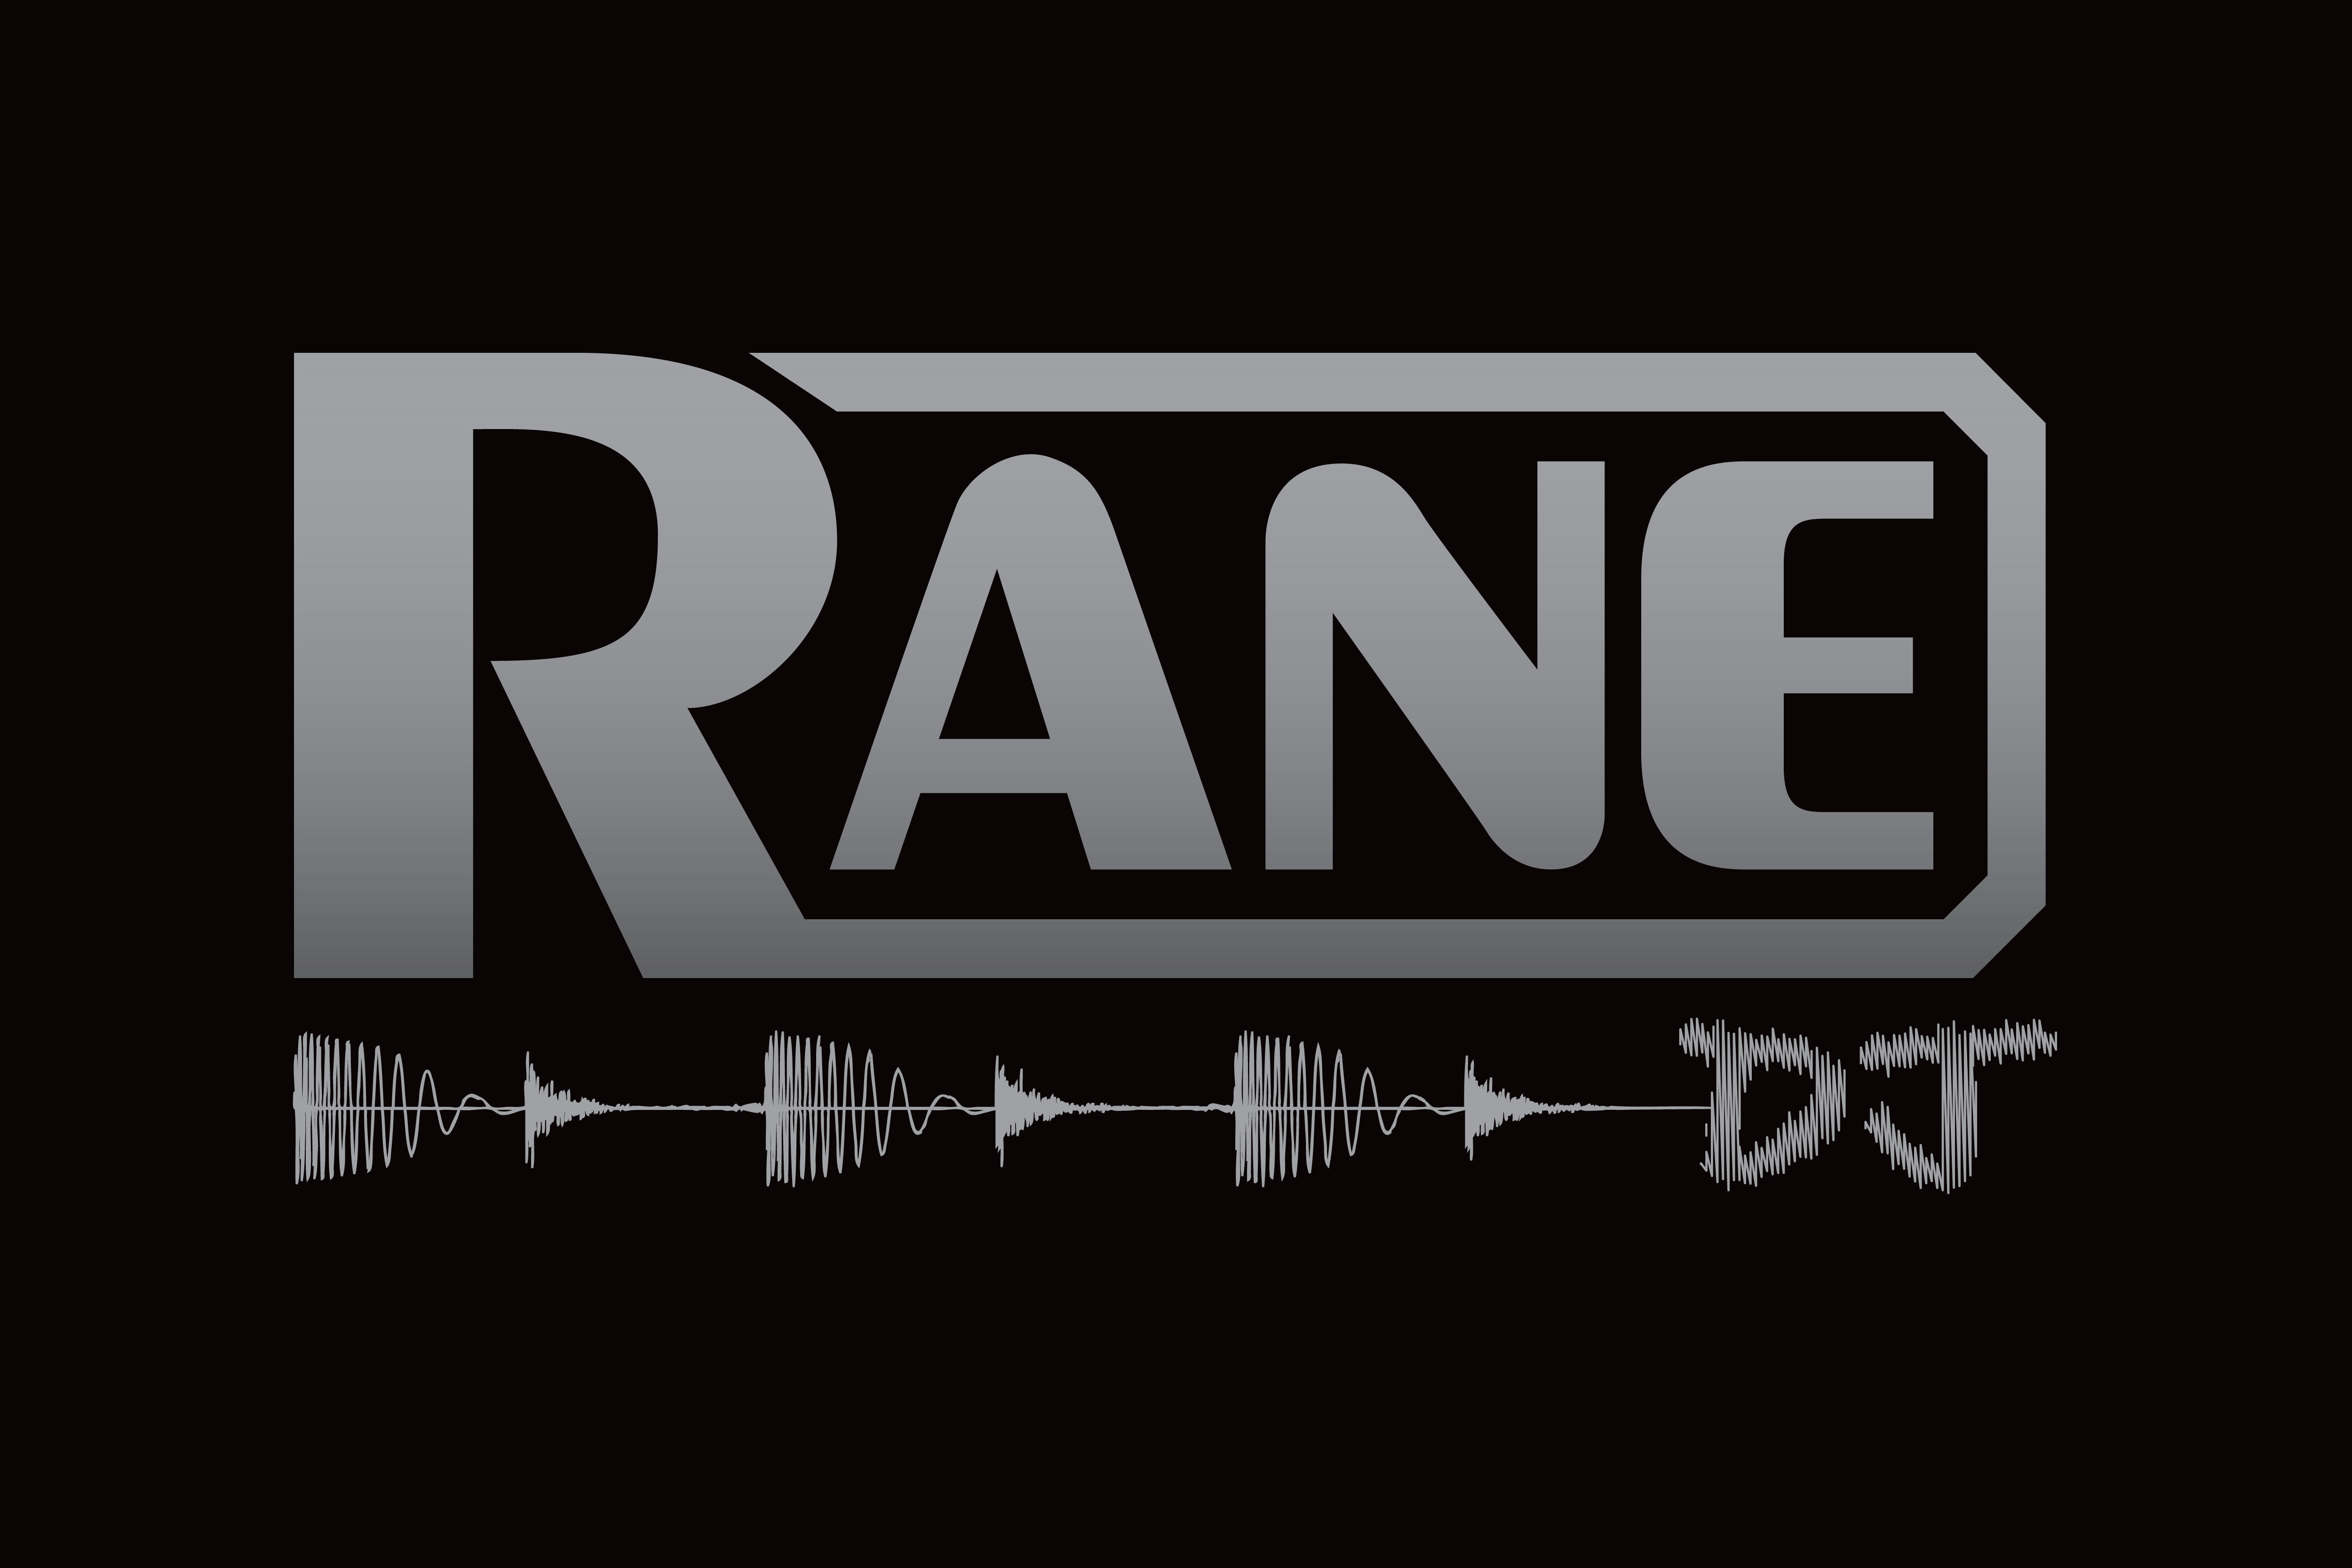 Rane Company Logos